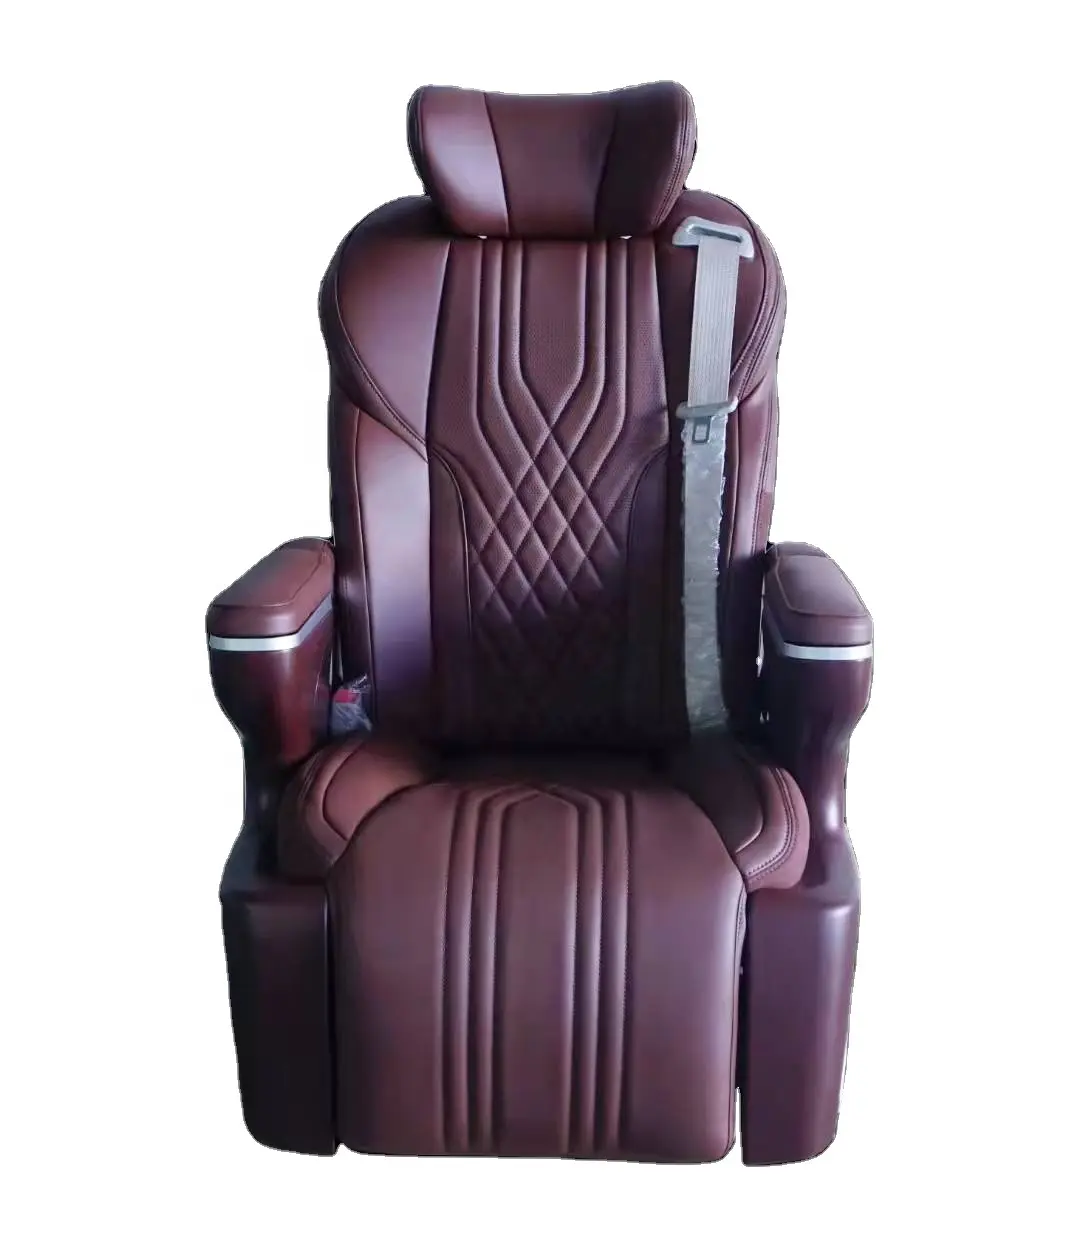 Fabriek Koop Luxe Originele Van Autostoel Voor Suv Rv Met Goede Prijs